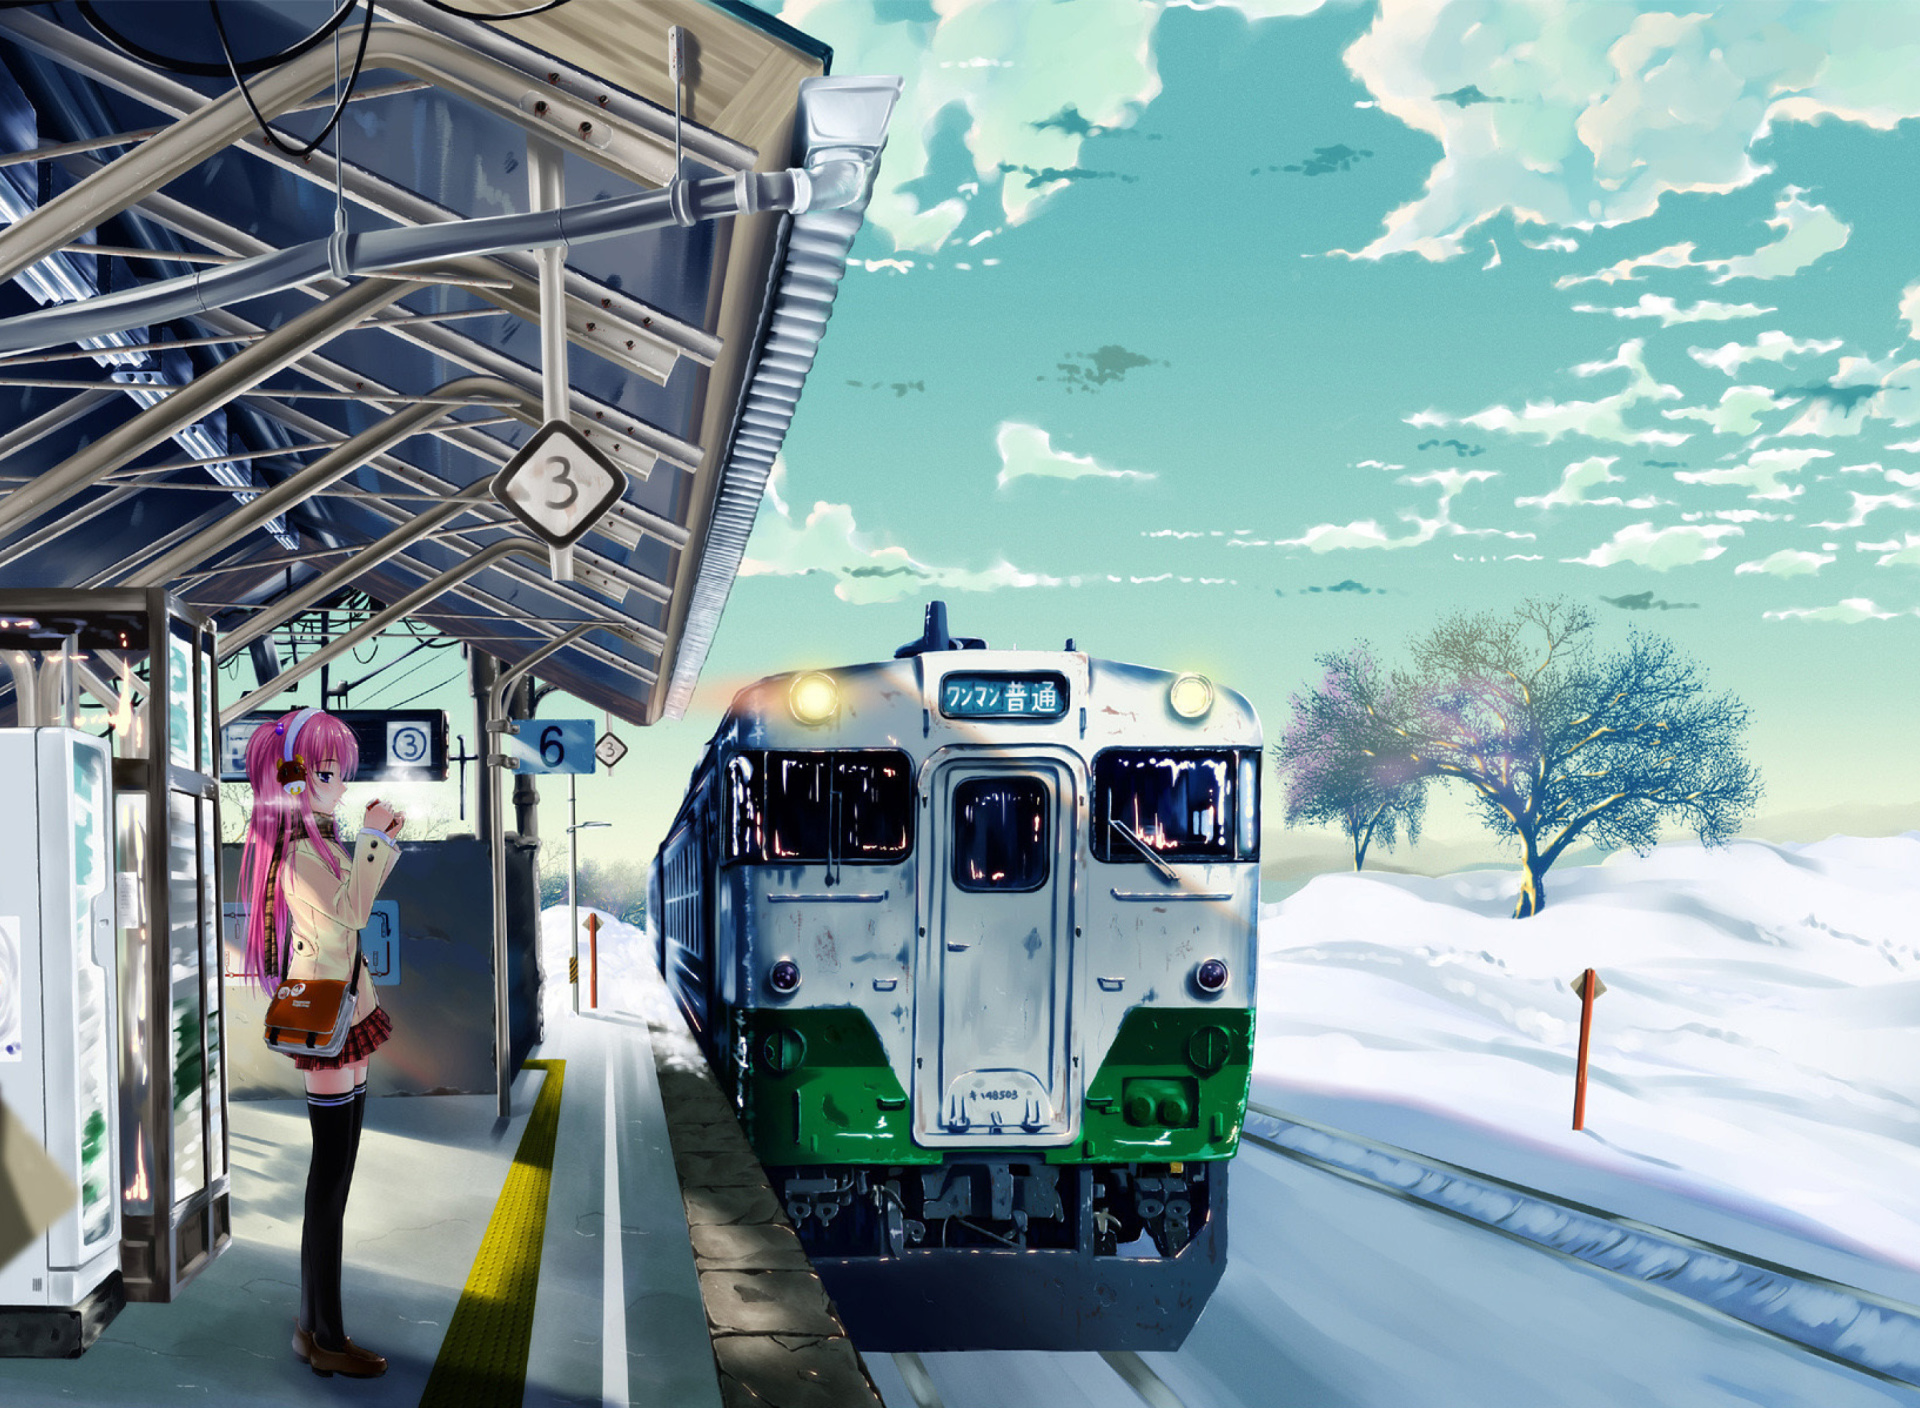 Обои Anime Girl on Snow Train Stations 1920x1408